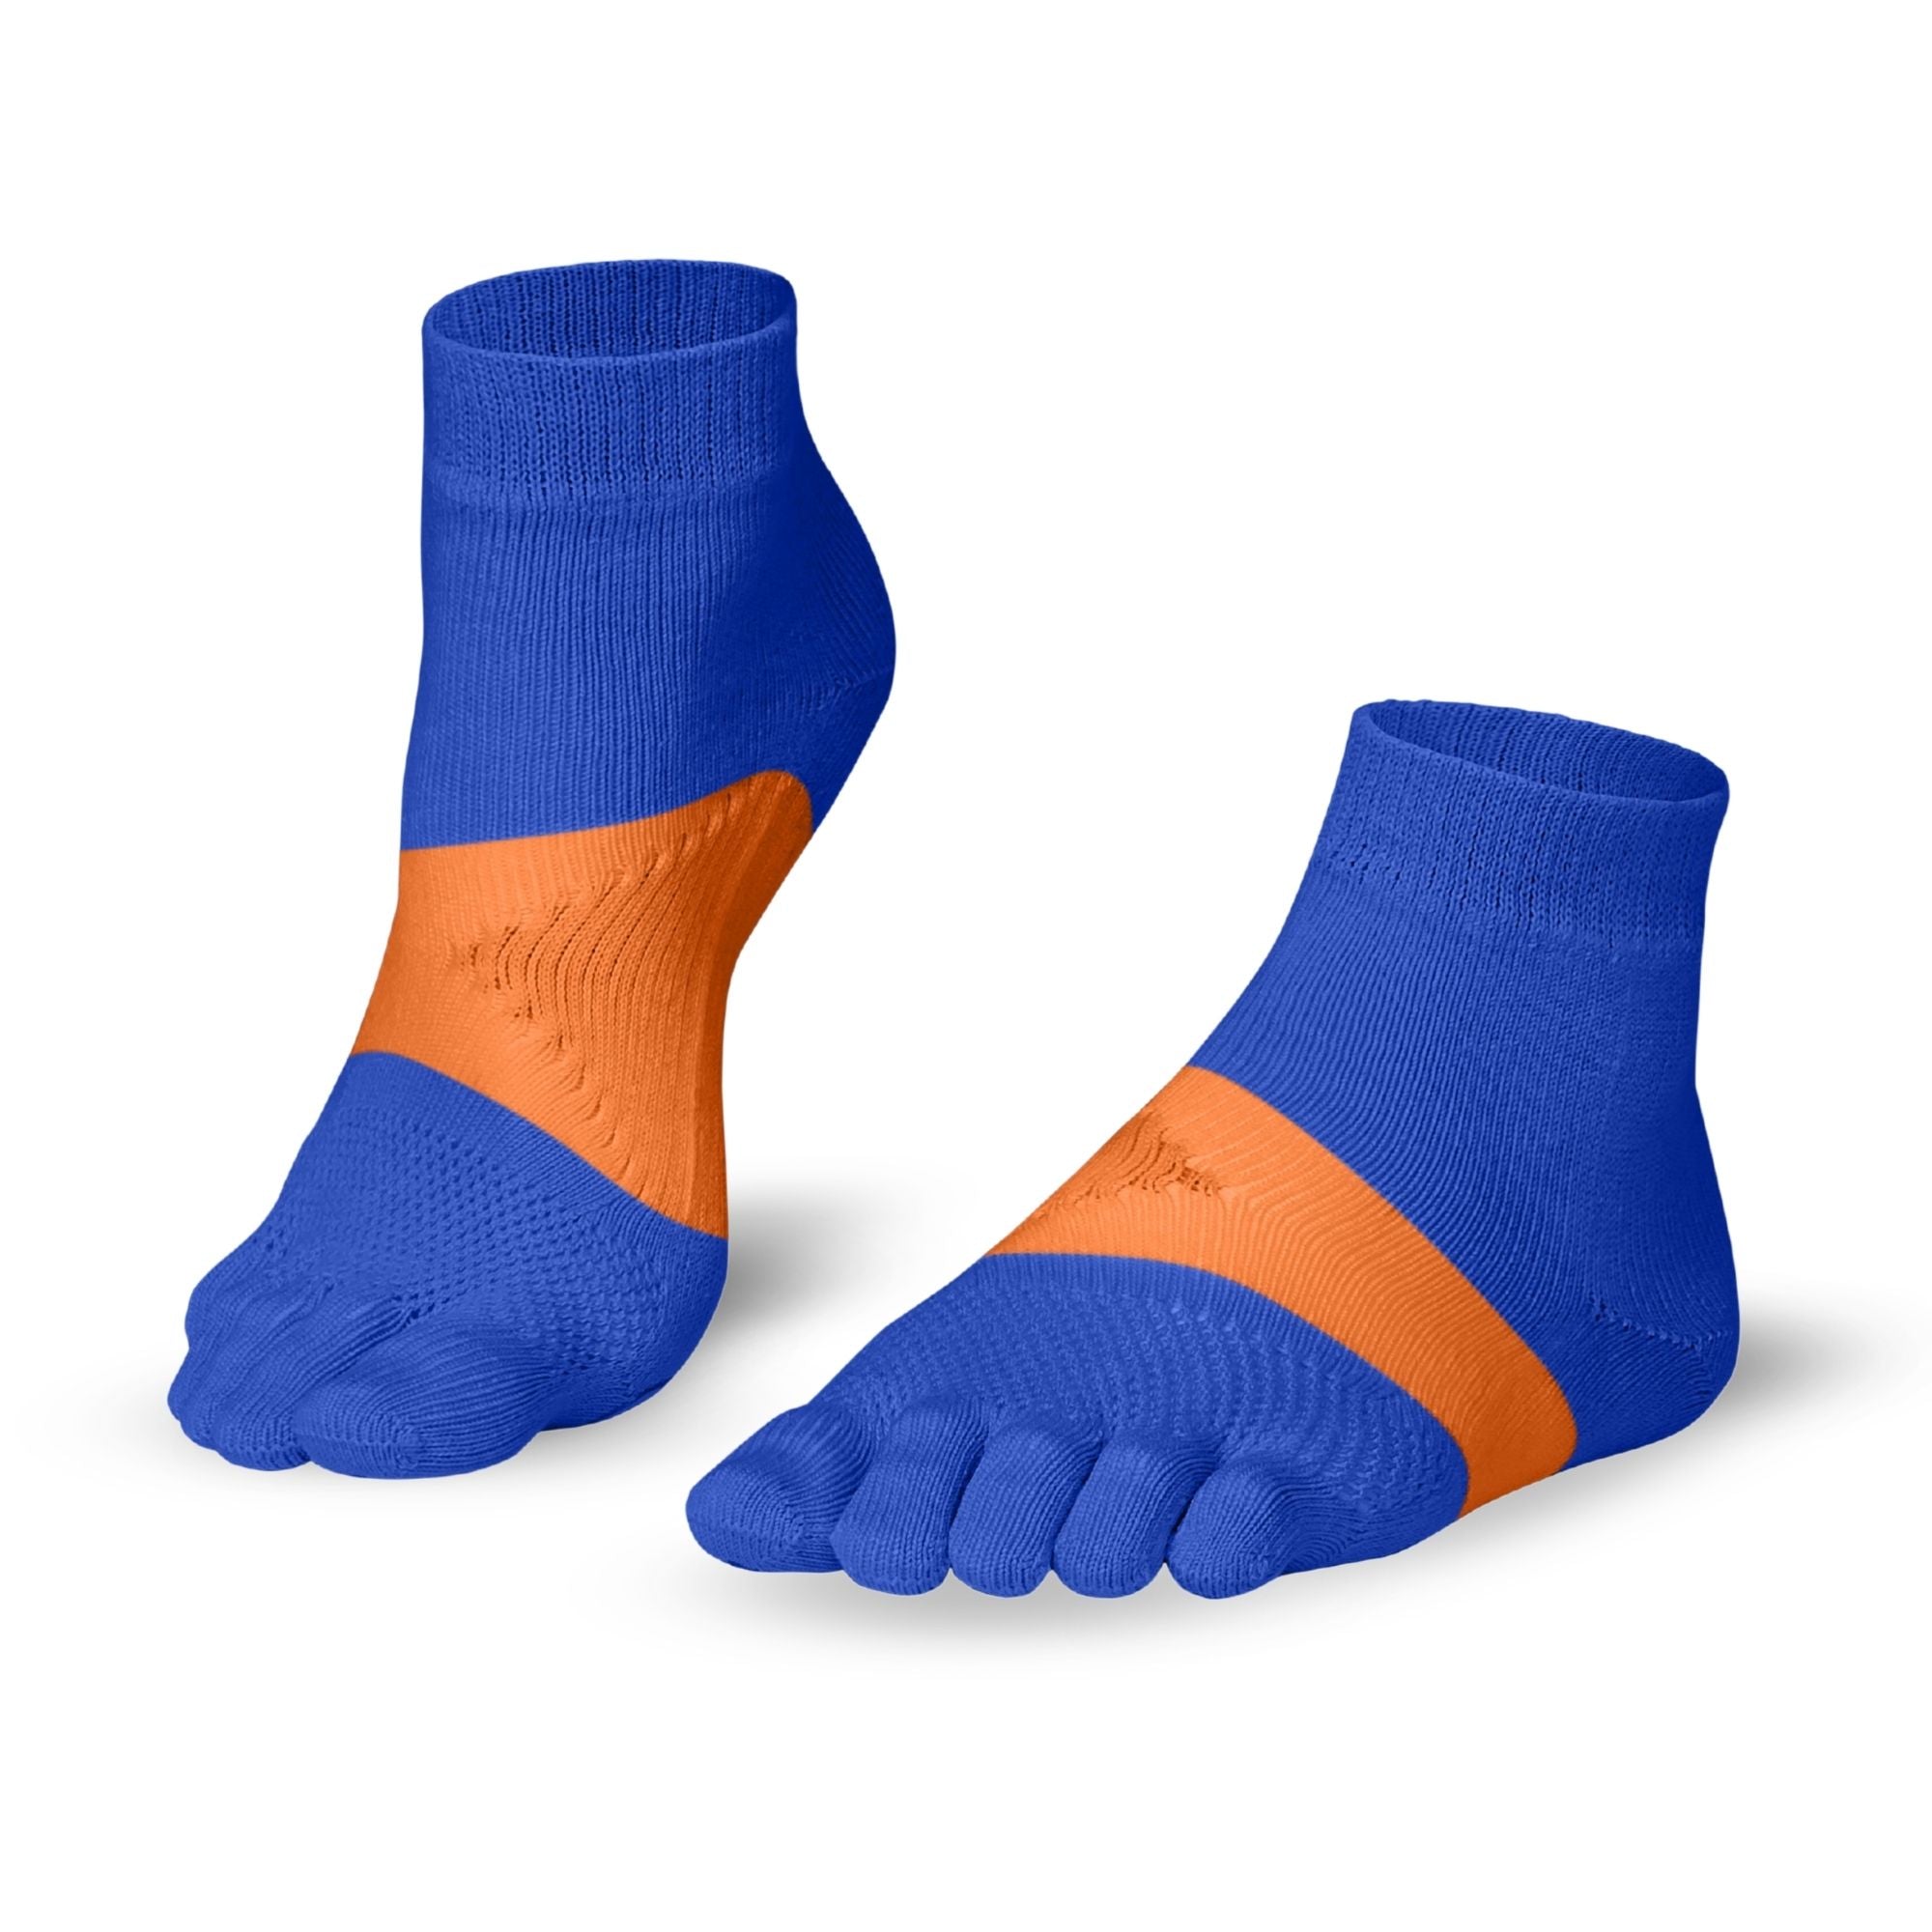 Knitido® Marathon - innovative running toe socks